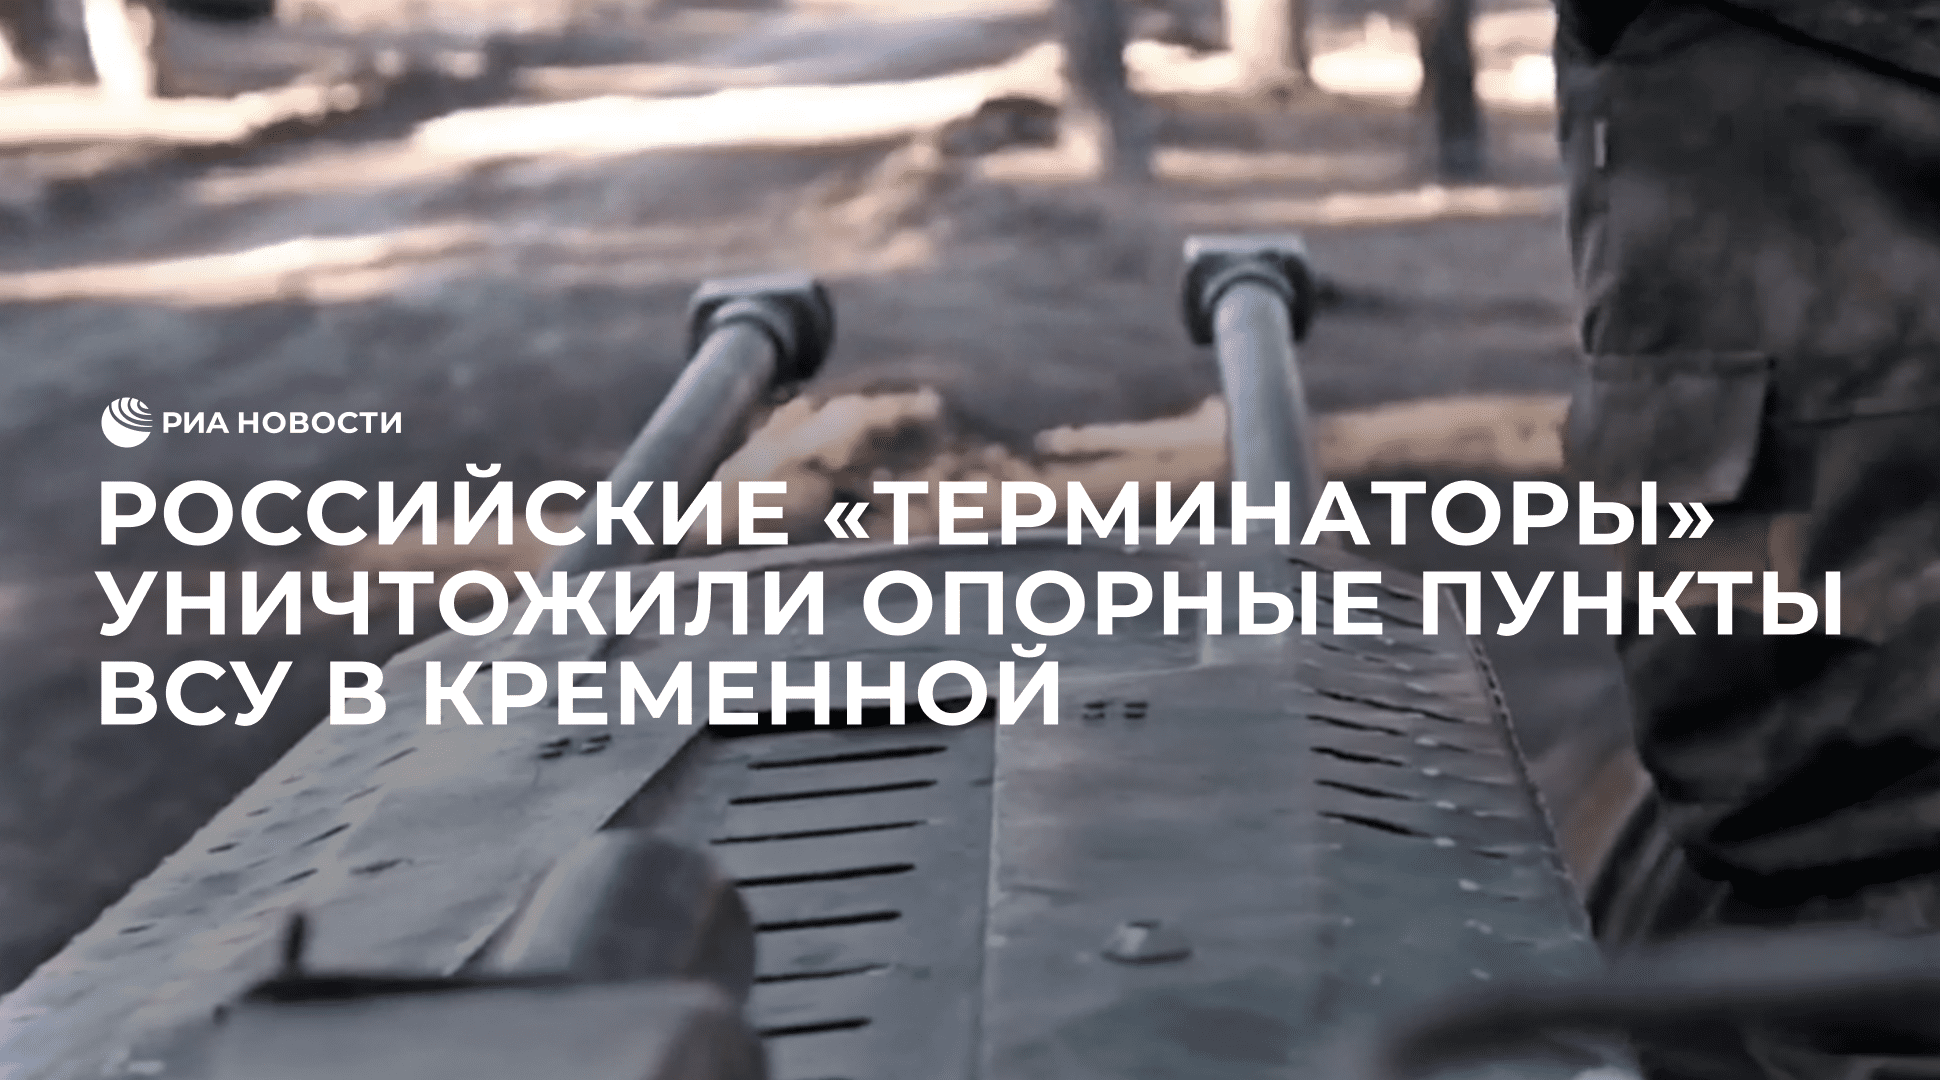 Российские "Терминаторы" уничтожили опорные пункты ВСУ в Кременной